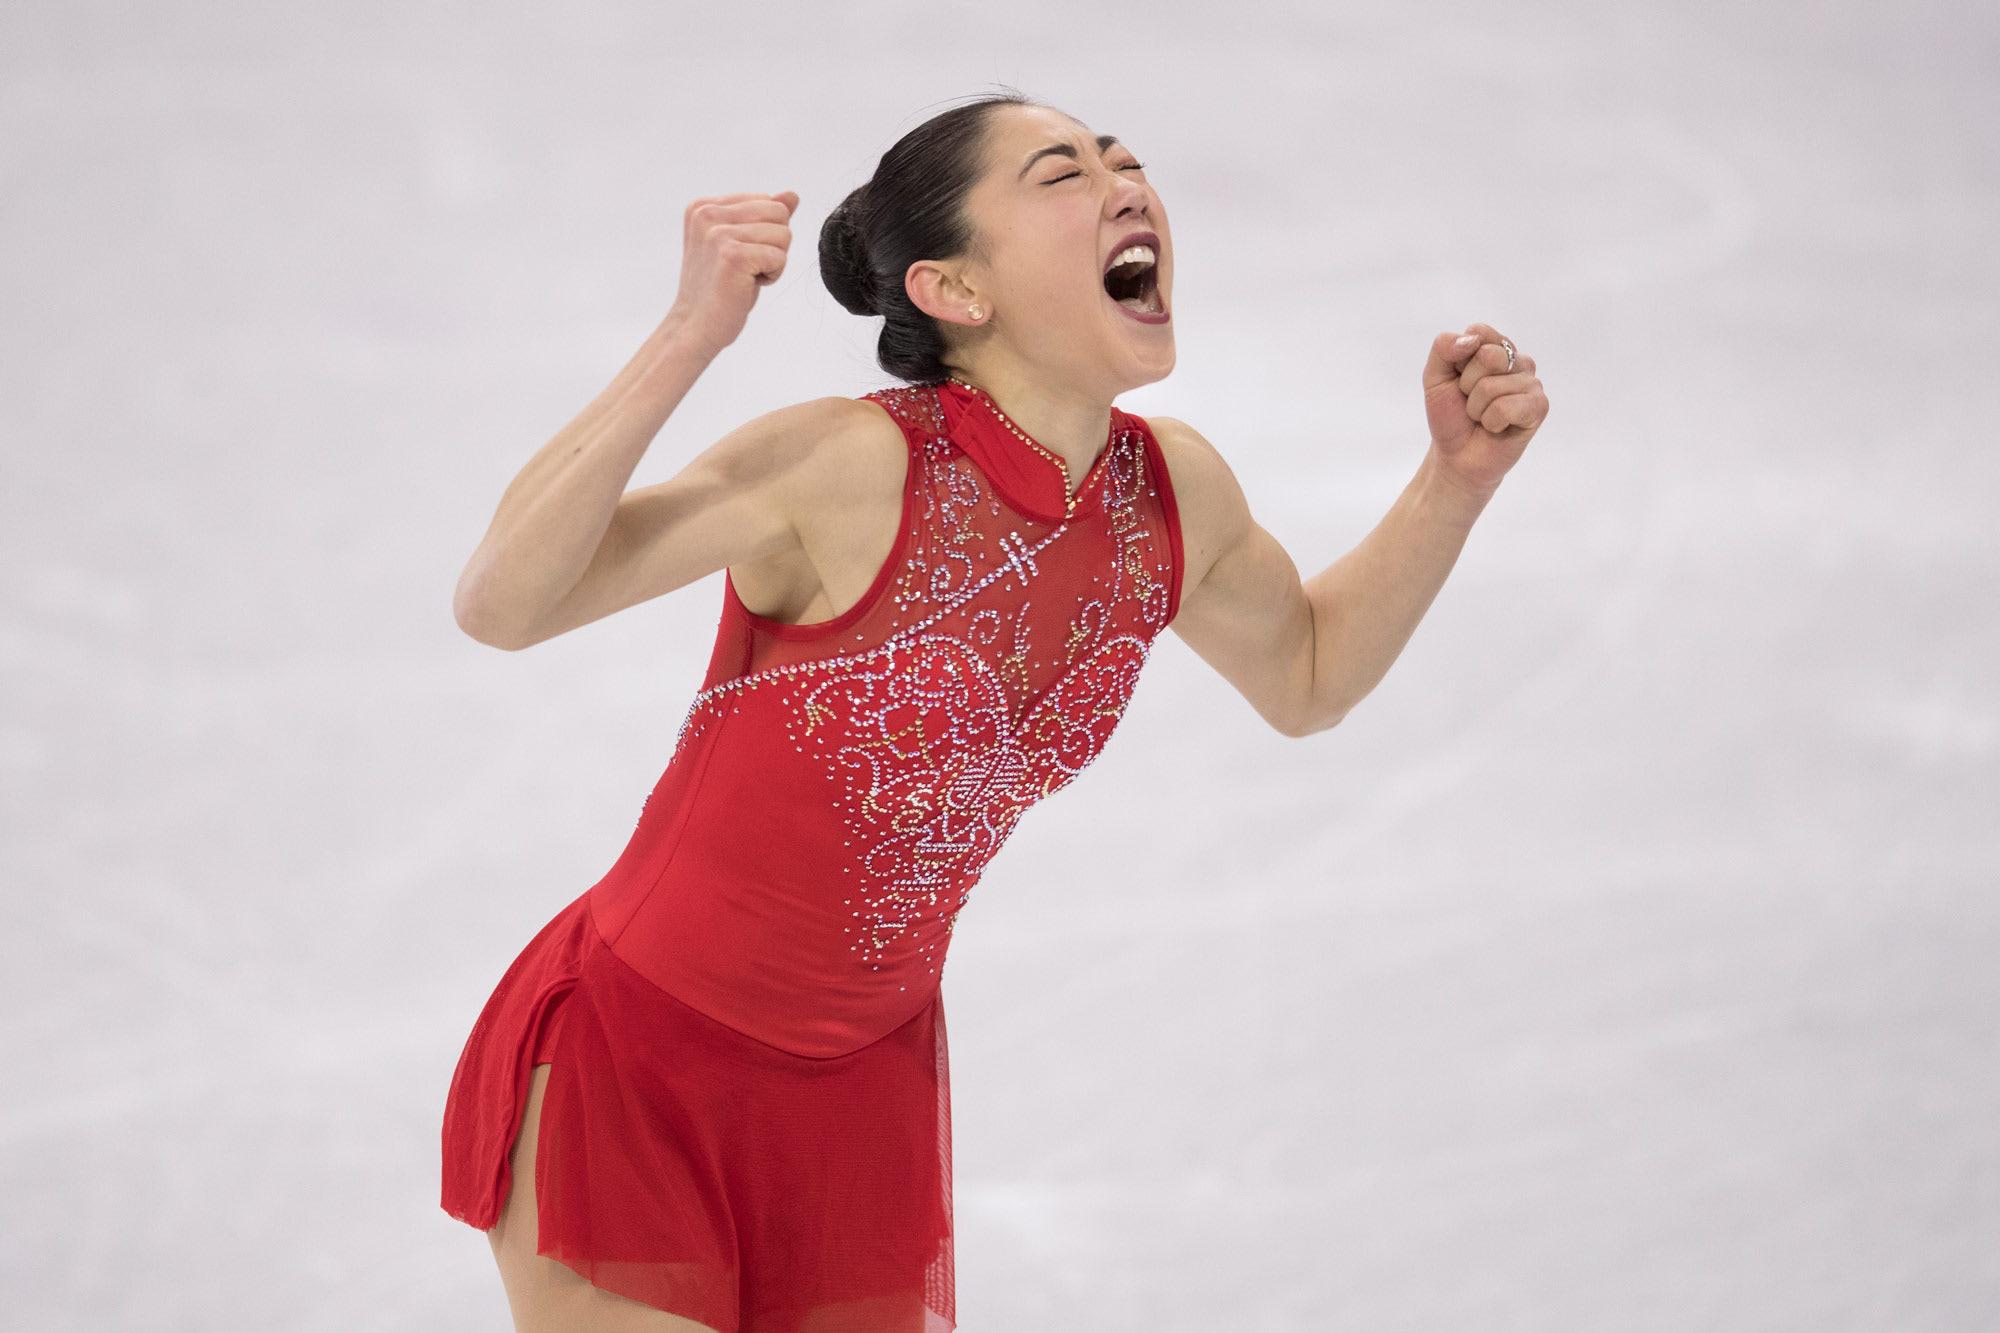 Figure skating: Triumph after tears as Nagasu makes skating